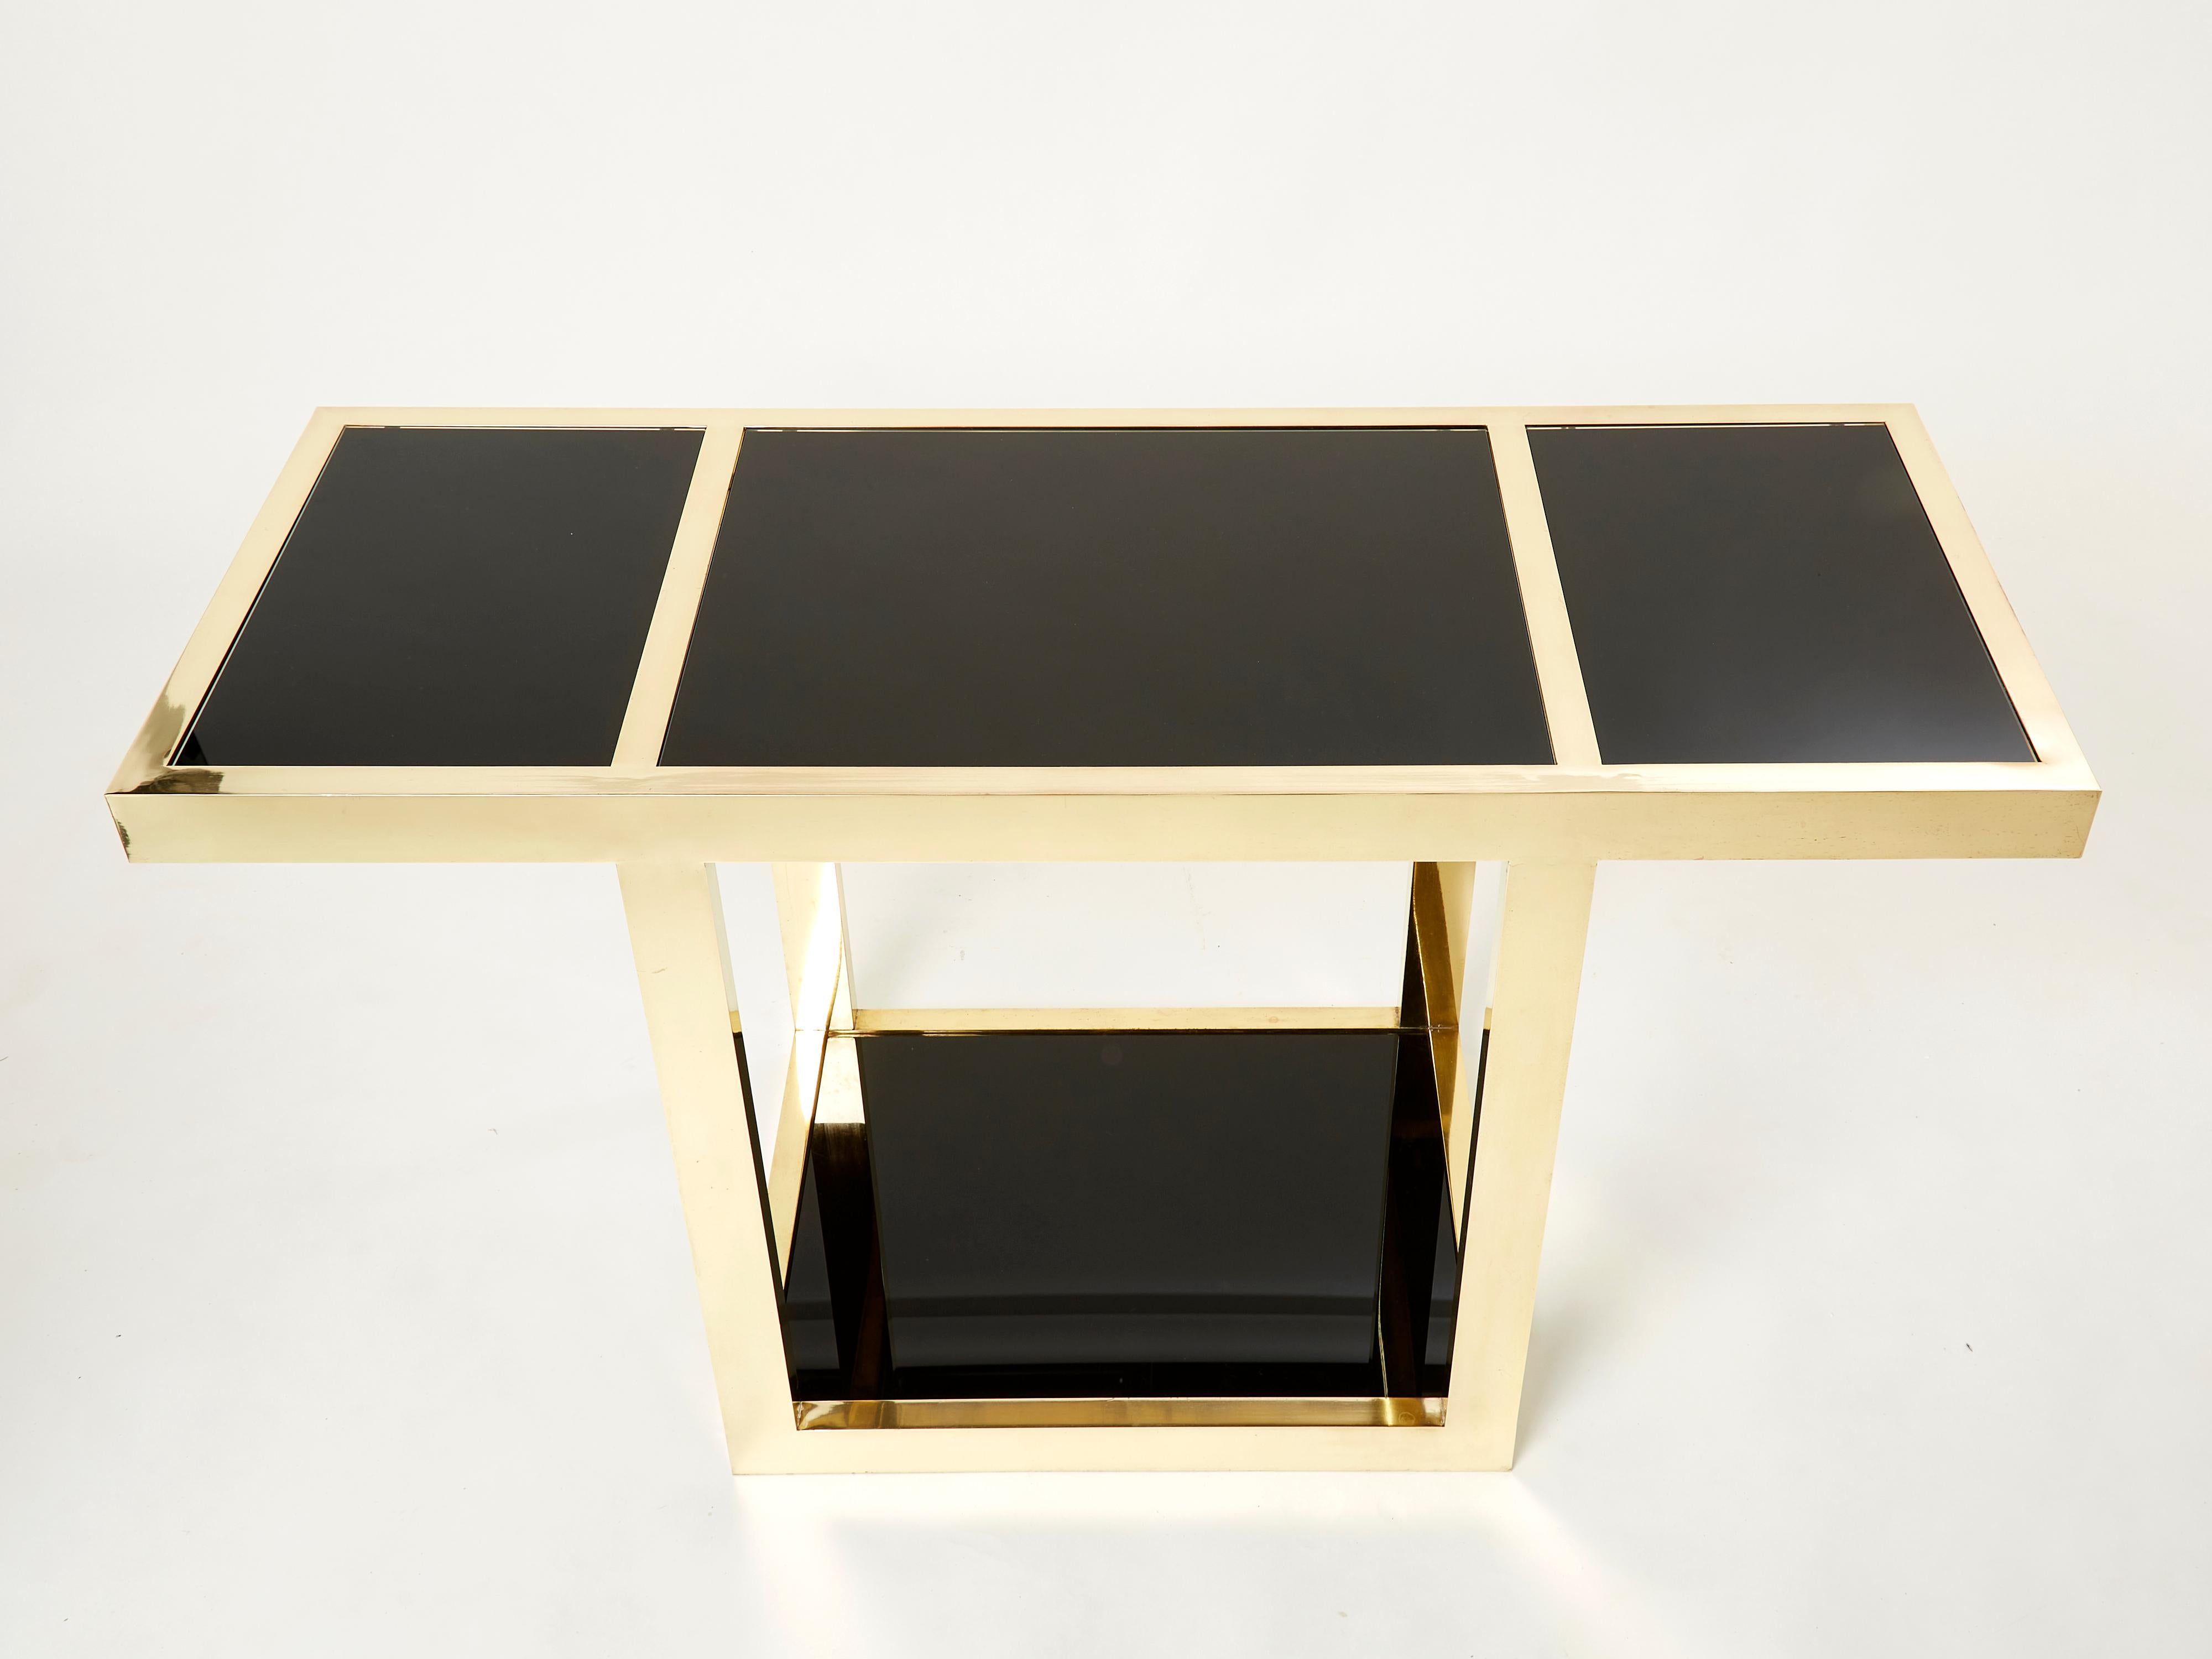 Late 20th Century Gabriella Crespi “Puzzle” Brass Black Opaline Console Table 1973